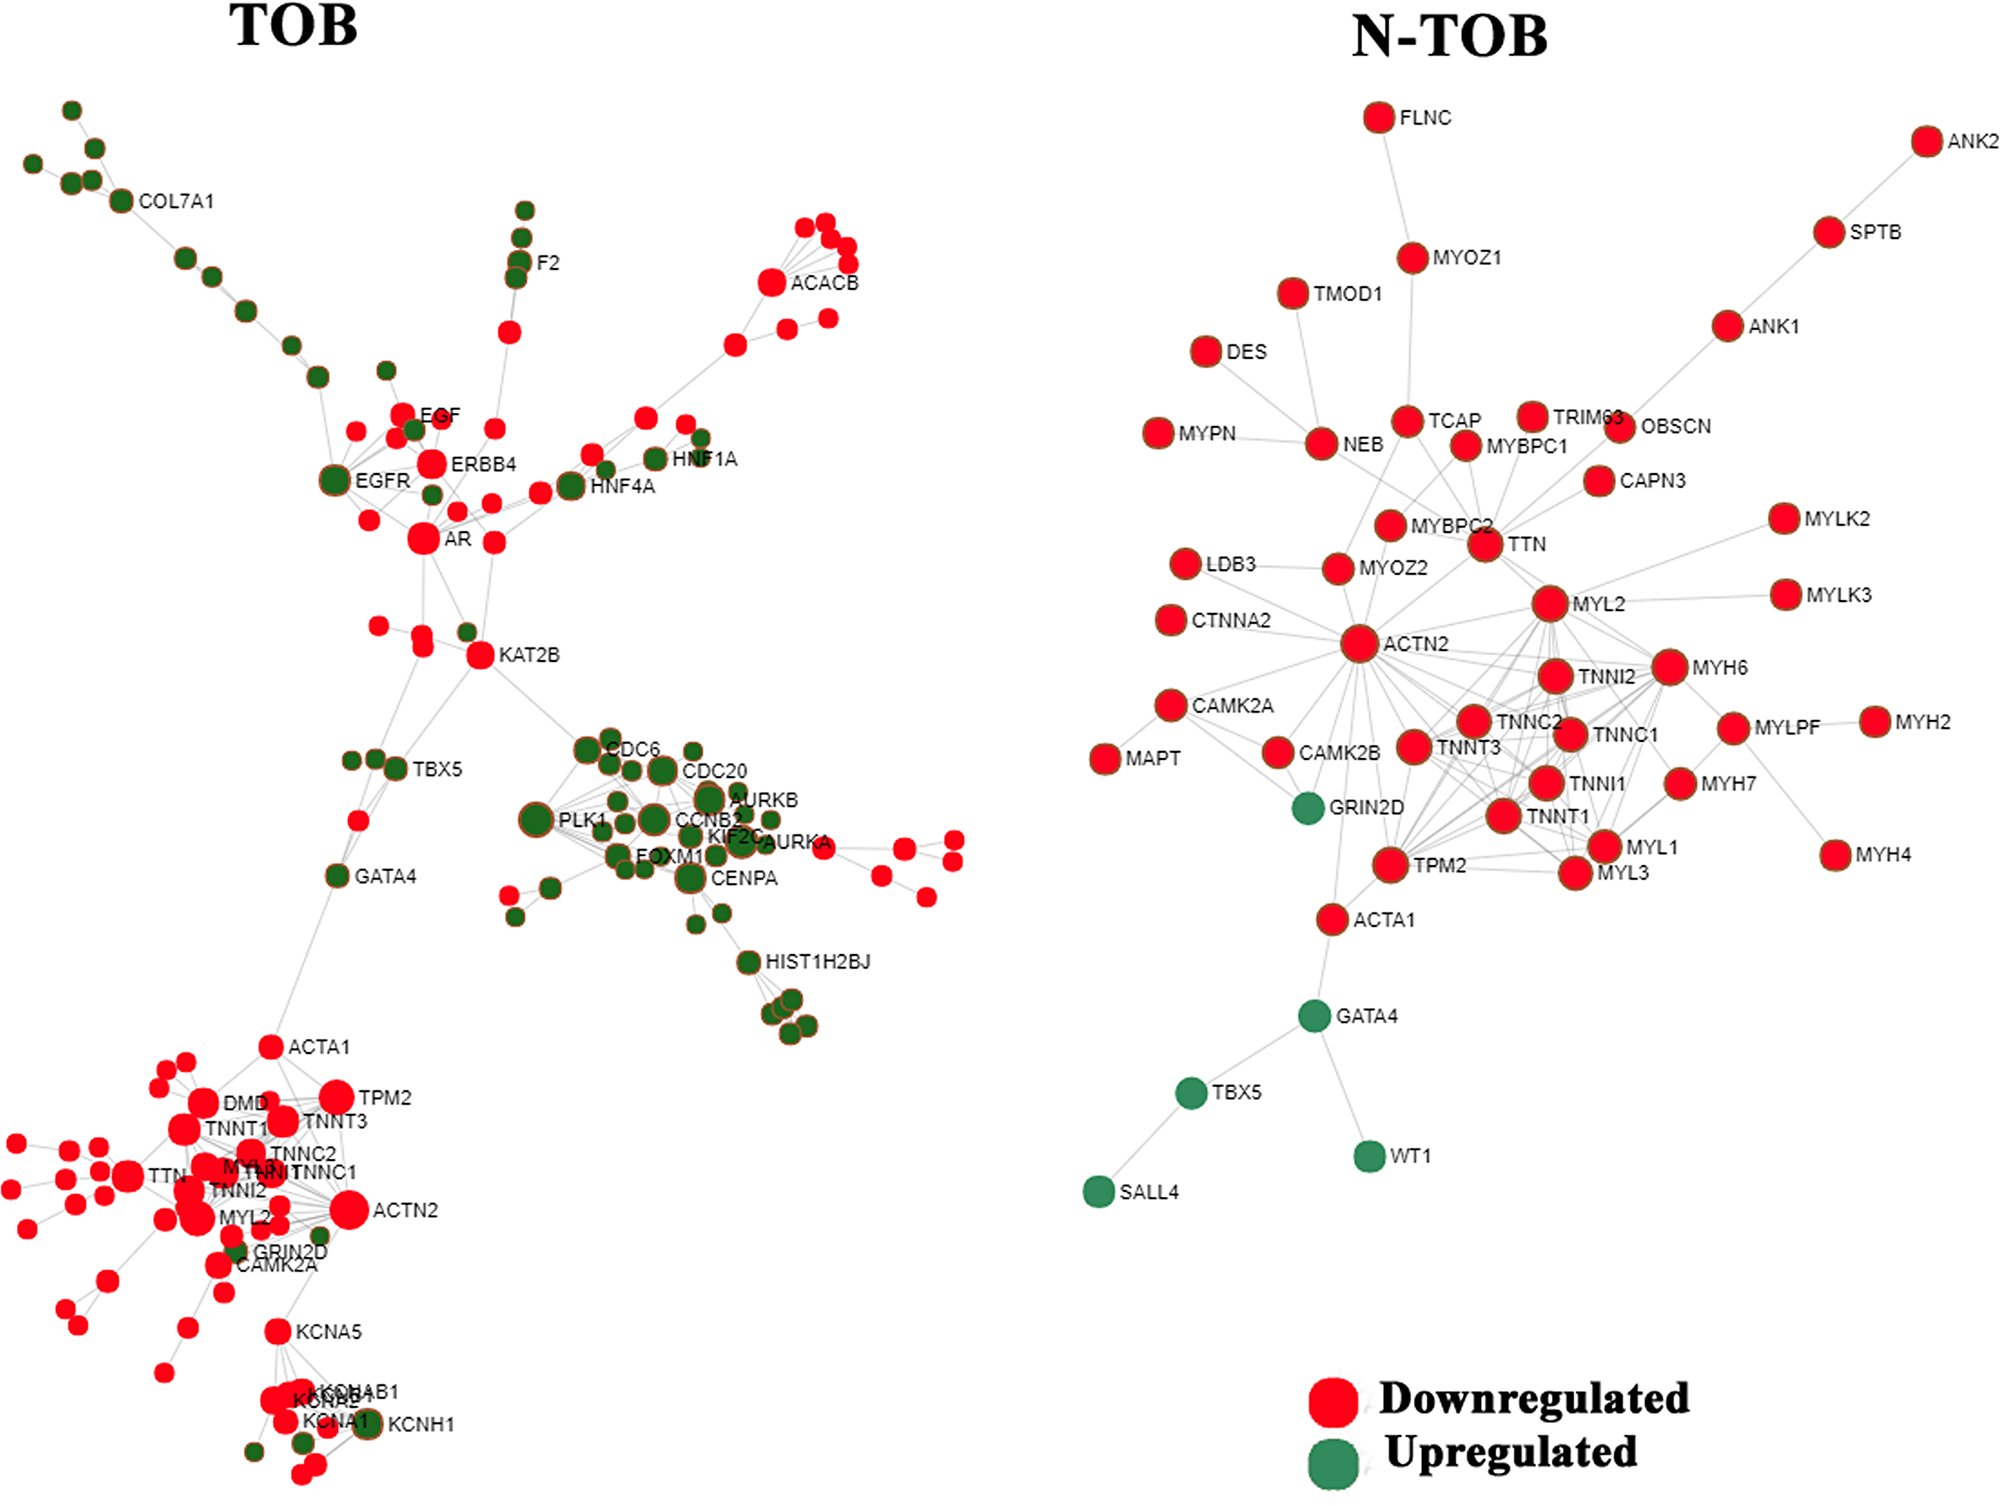 Network based meta-analysis of hub genes.